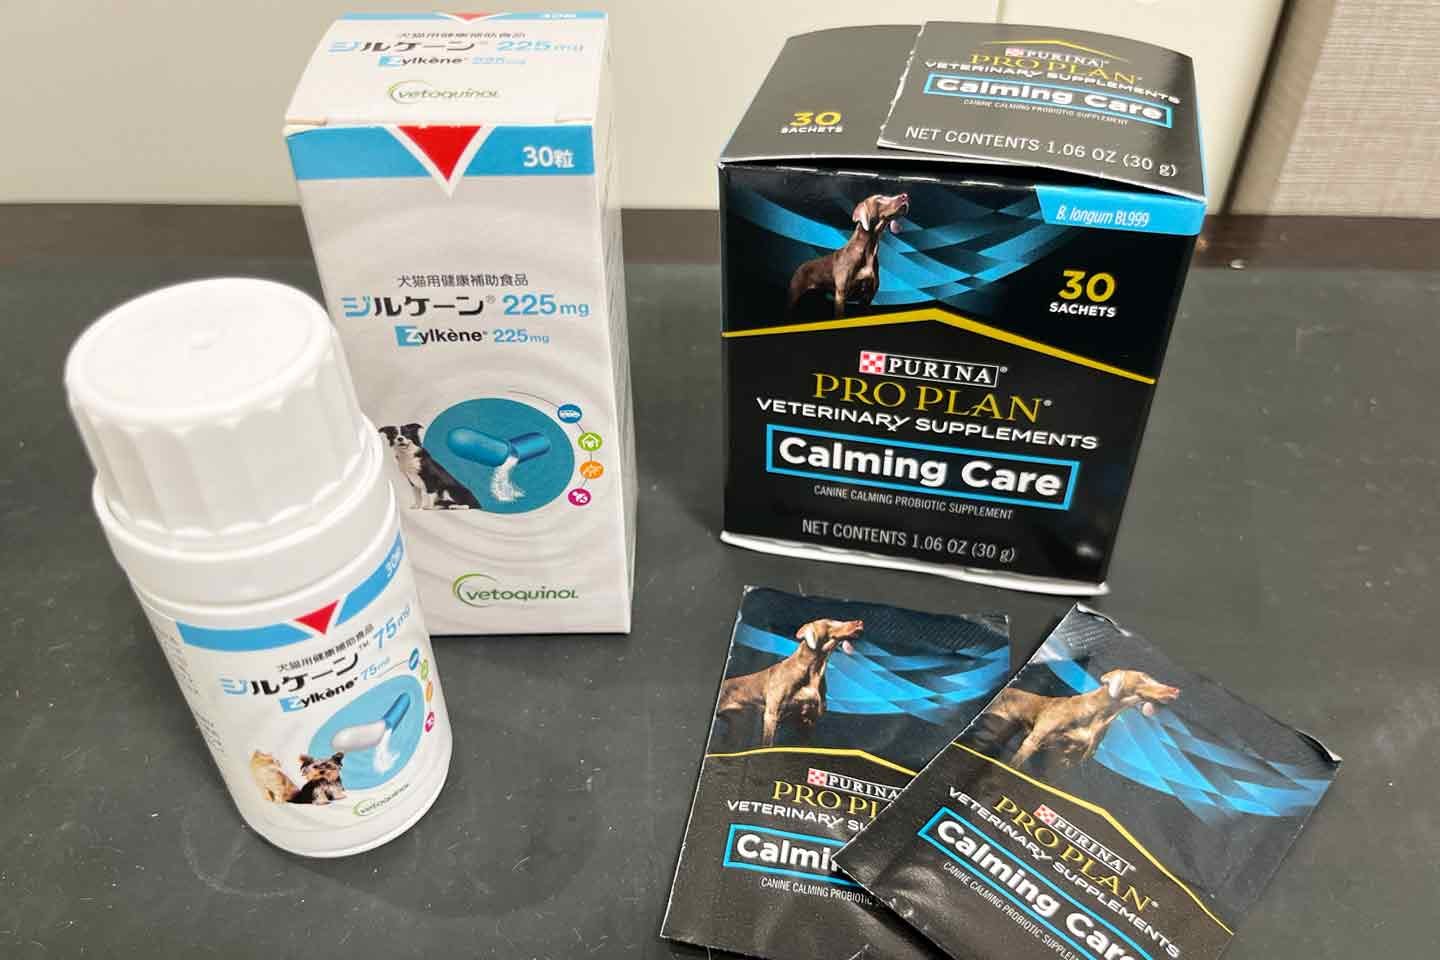 日本全薬工業株式会社の犬猫用サプリメント『ジルケーン』とピュリナの犬用サプリメント『カーミングケア』